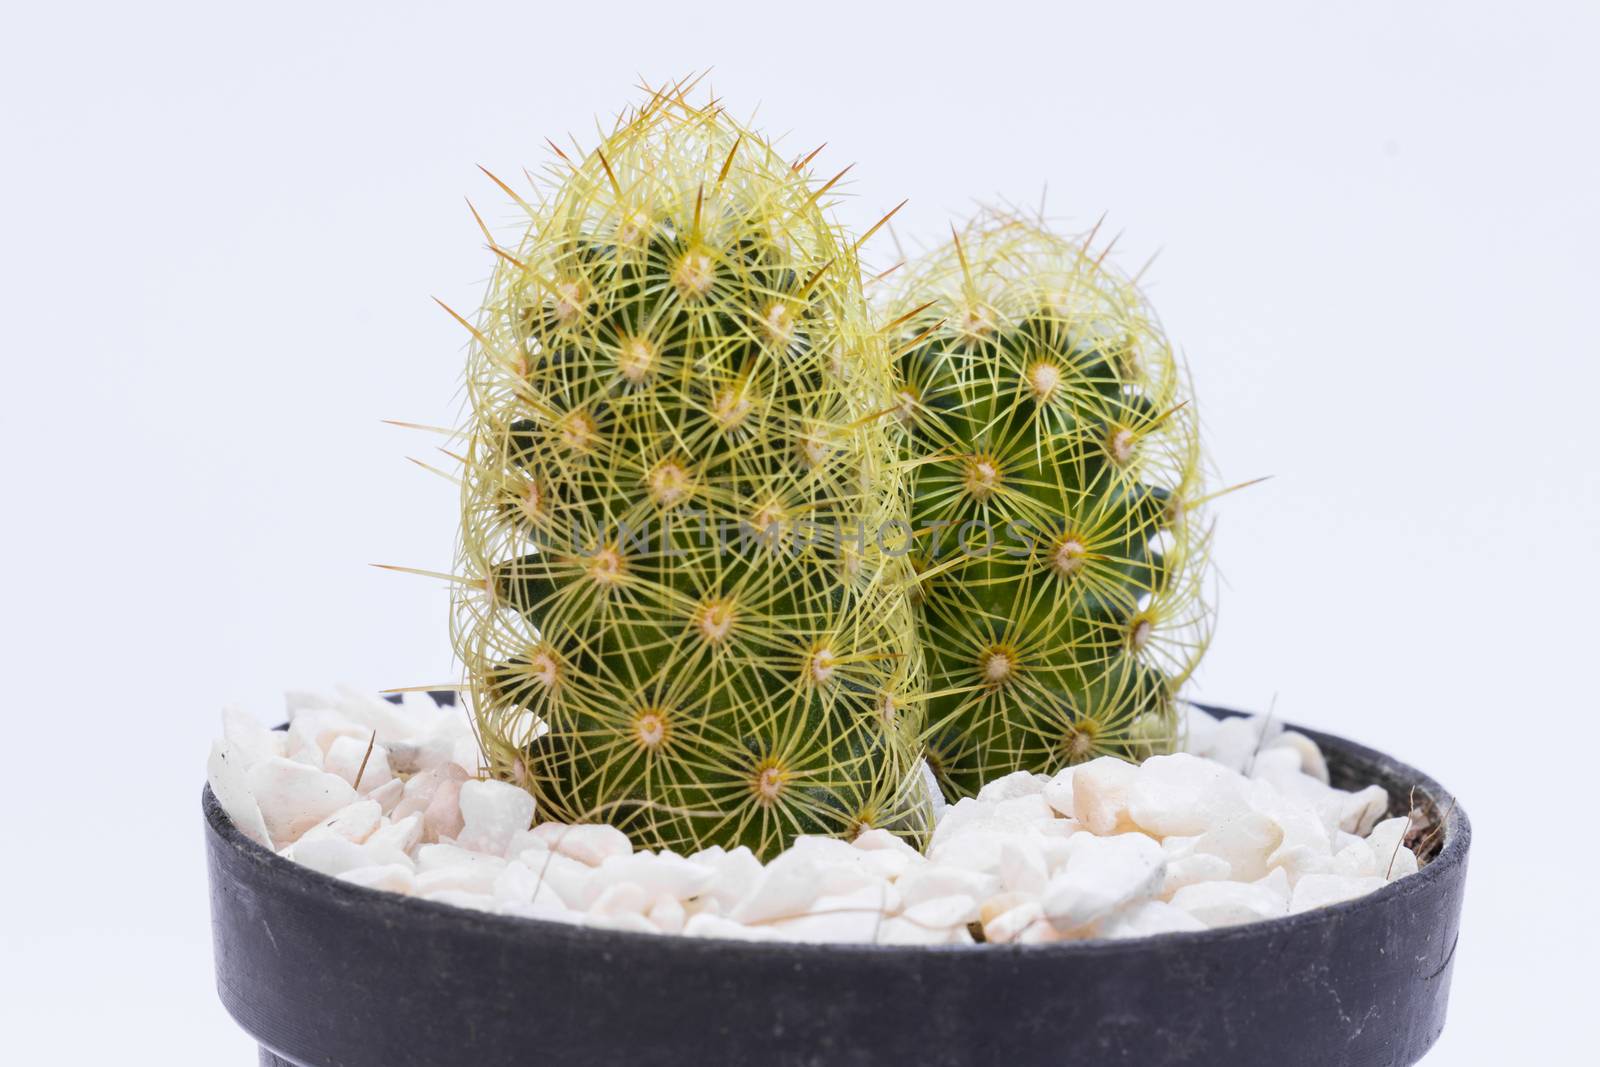 Small cactus in black plastic pot